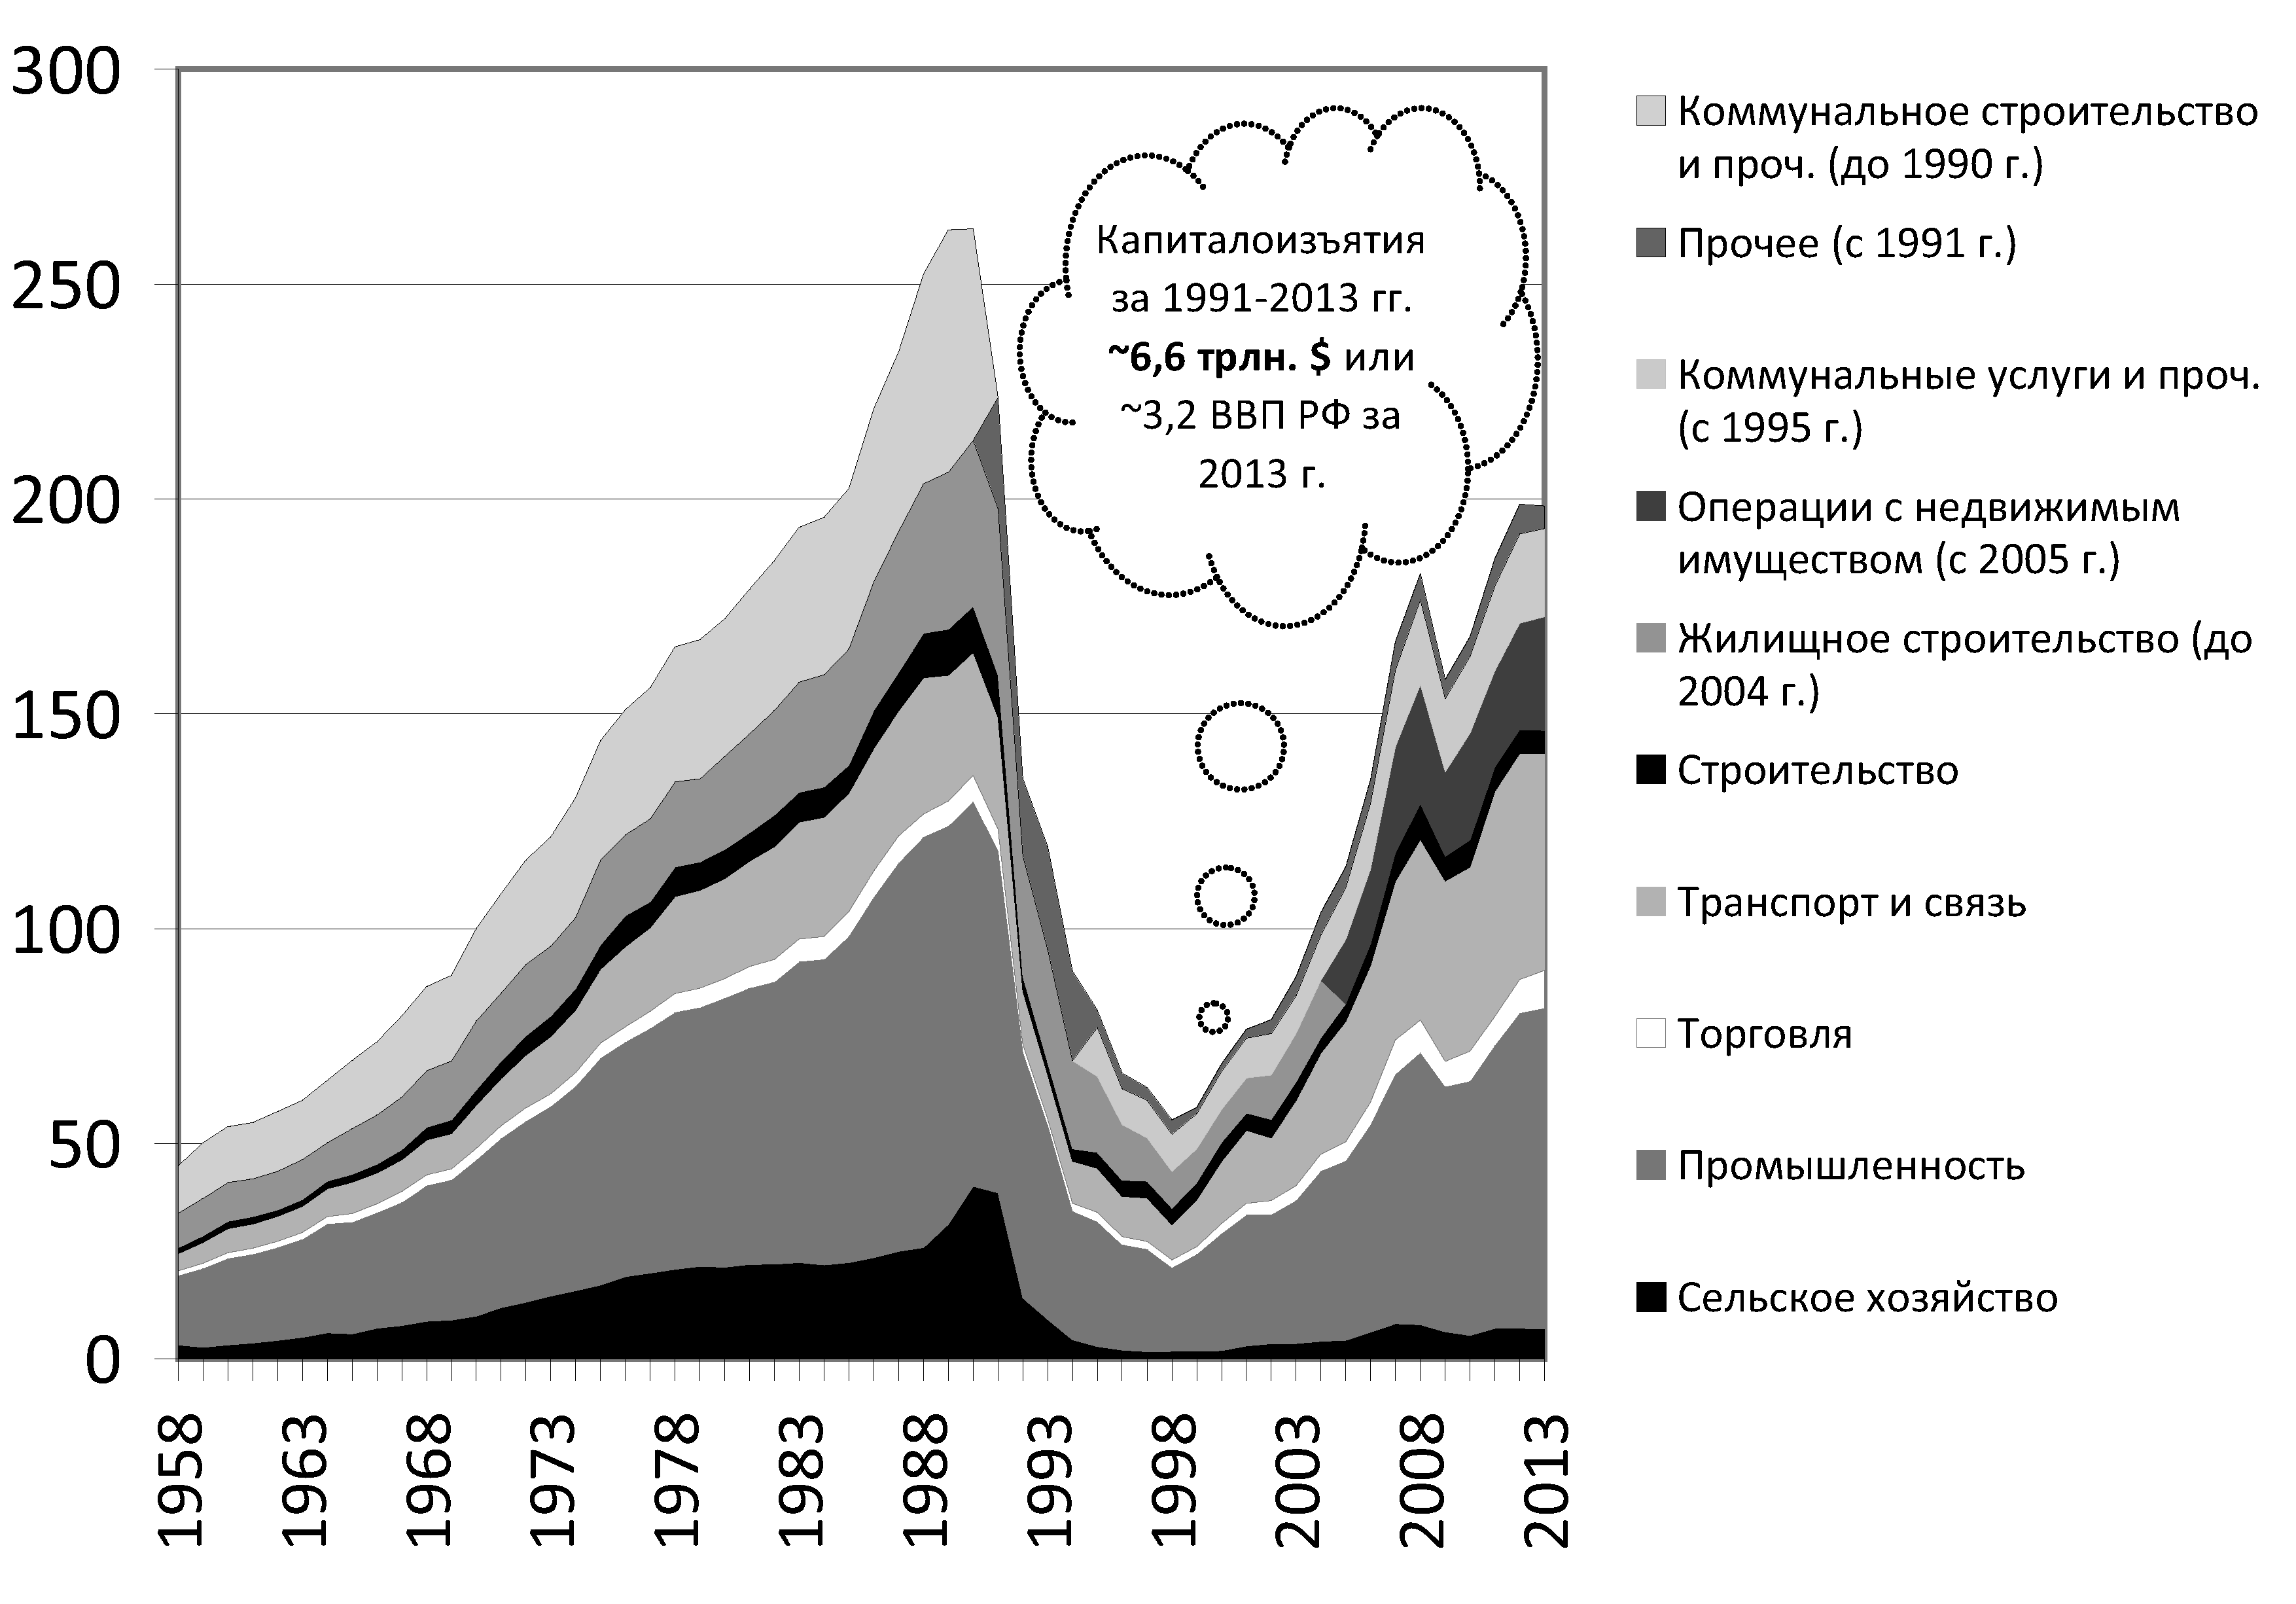 Индексы капитальных вложений в народное хозяйство РСФСР и инвестиций в основной капитал в РФ (в сопоставимых ценах, 1970=100)